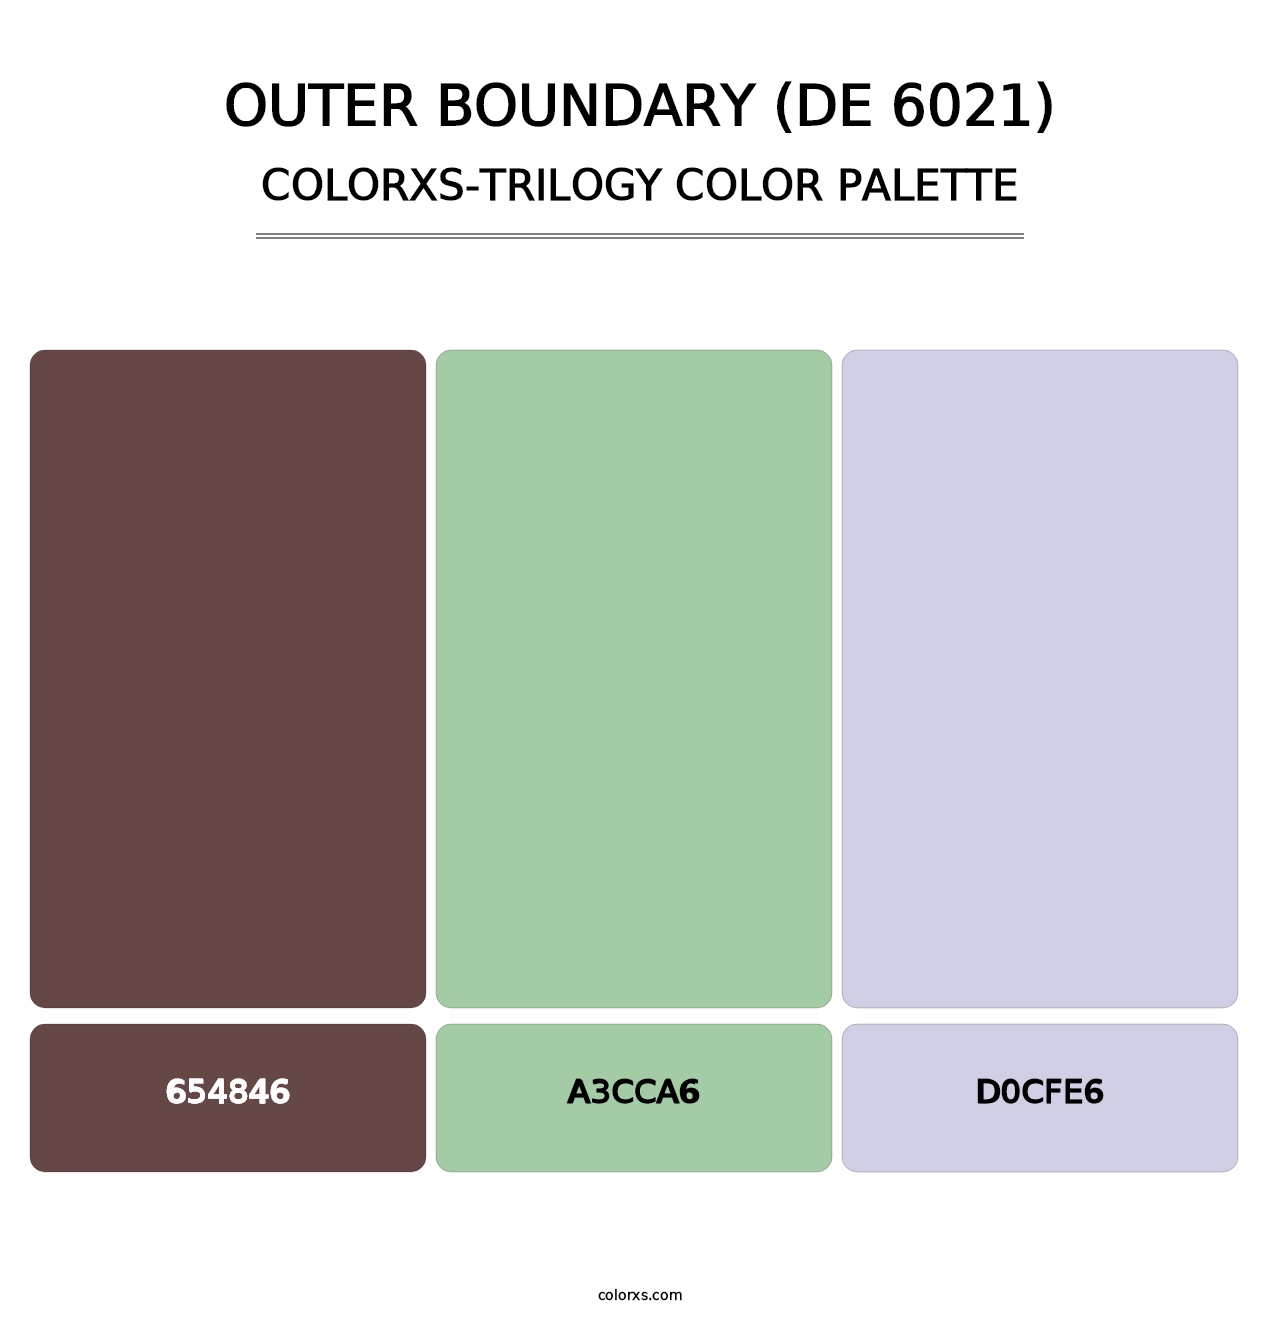 Outer Boundary (DE 6021) - Colorxs Trilogy Palette